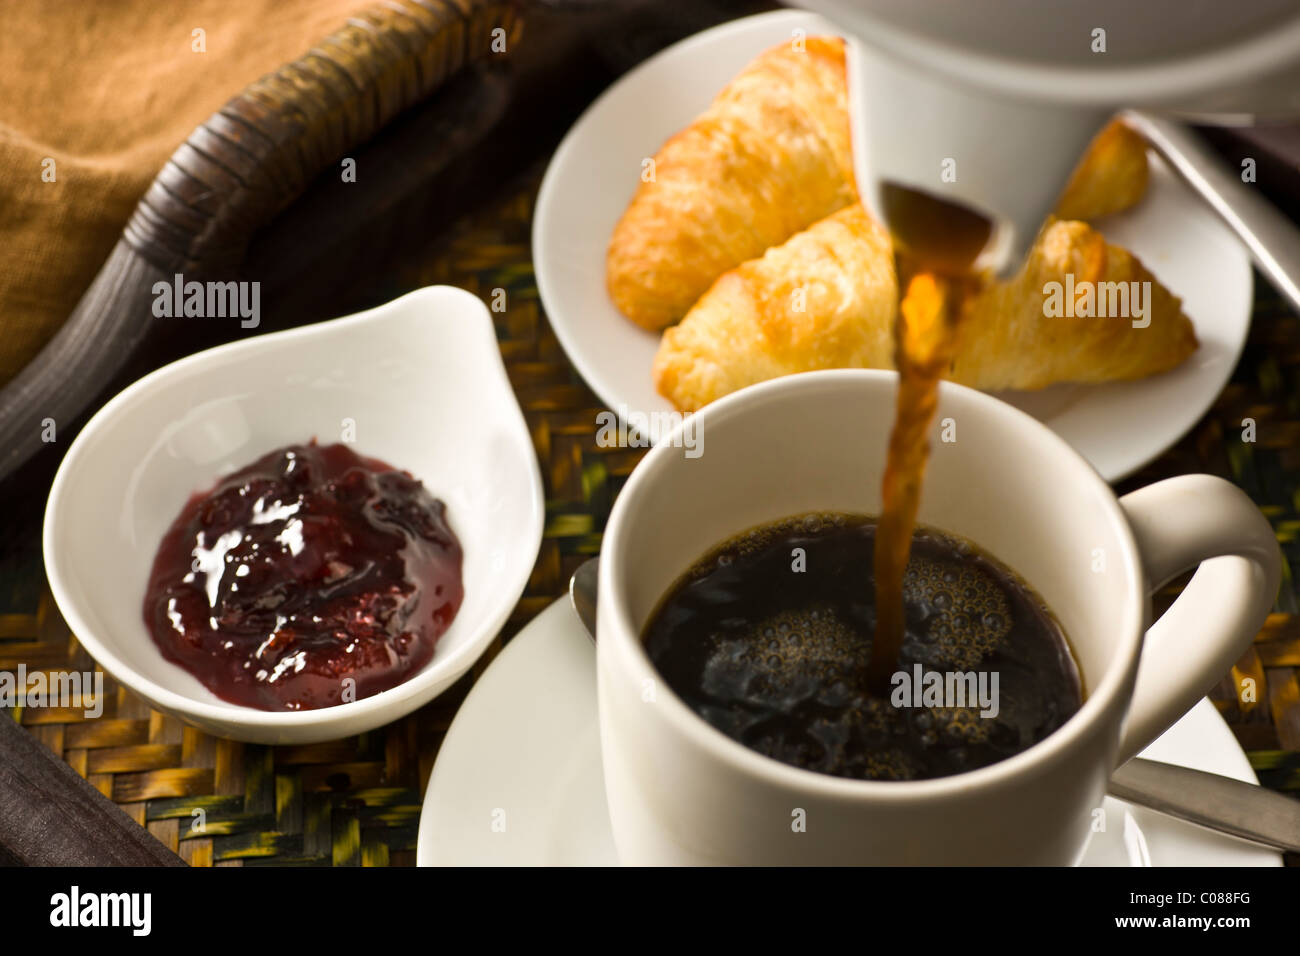 Ein Tablett mit Croissants, Marmelade und eine Tasse heißen schwarzen Kaffee gegossen Stockfoto